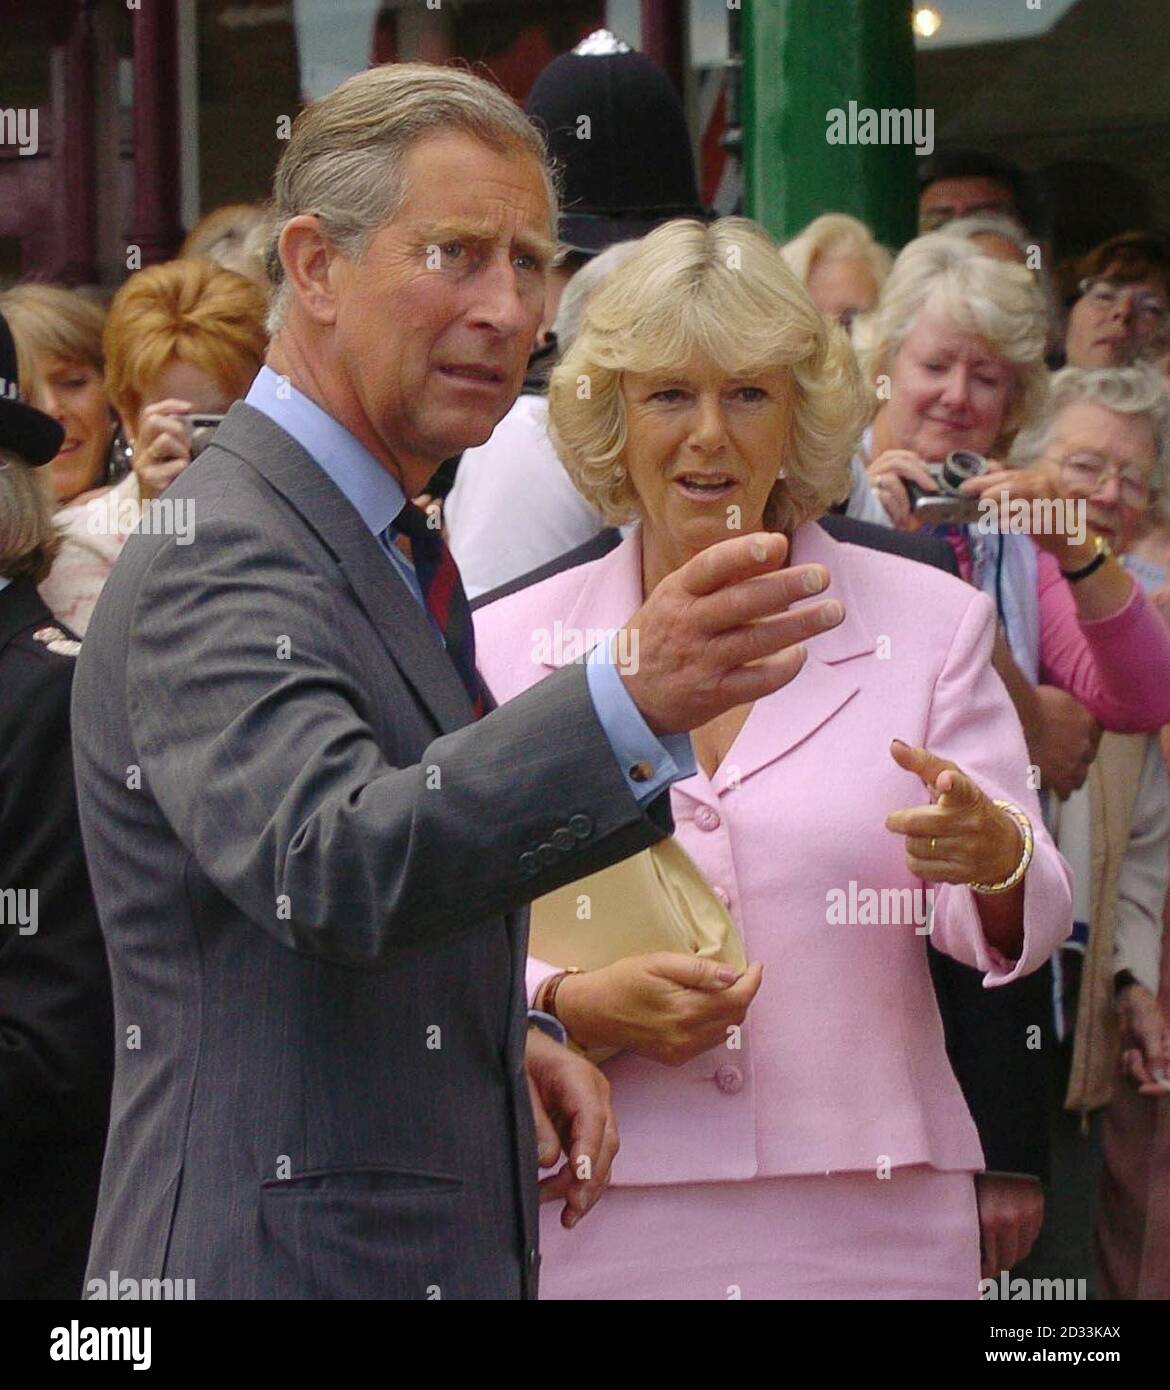 Il Principe del Galles e il suo partner, Camilla Parker-Bowles, accolgono i membri del pubblico al di fuori della Casa dei Mercanti a Marlborough, nel Wiltshire, dove ha mostrato il Principe due 'Bobby Vans', un programma di prevenzione del crimine di cui è una fiduciaria. Foto Stock